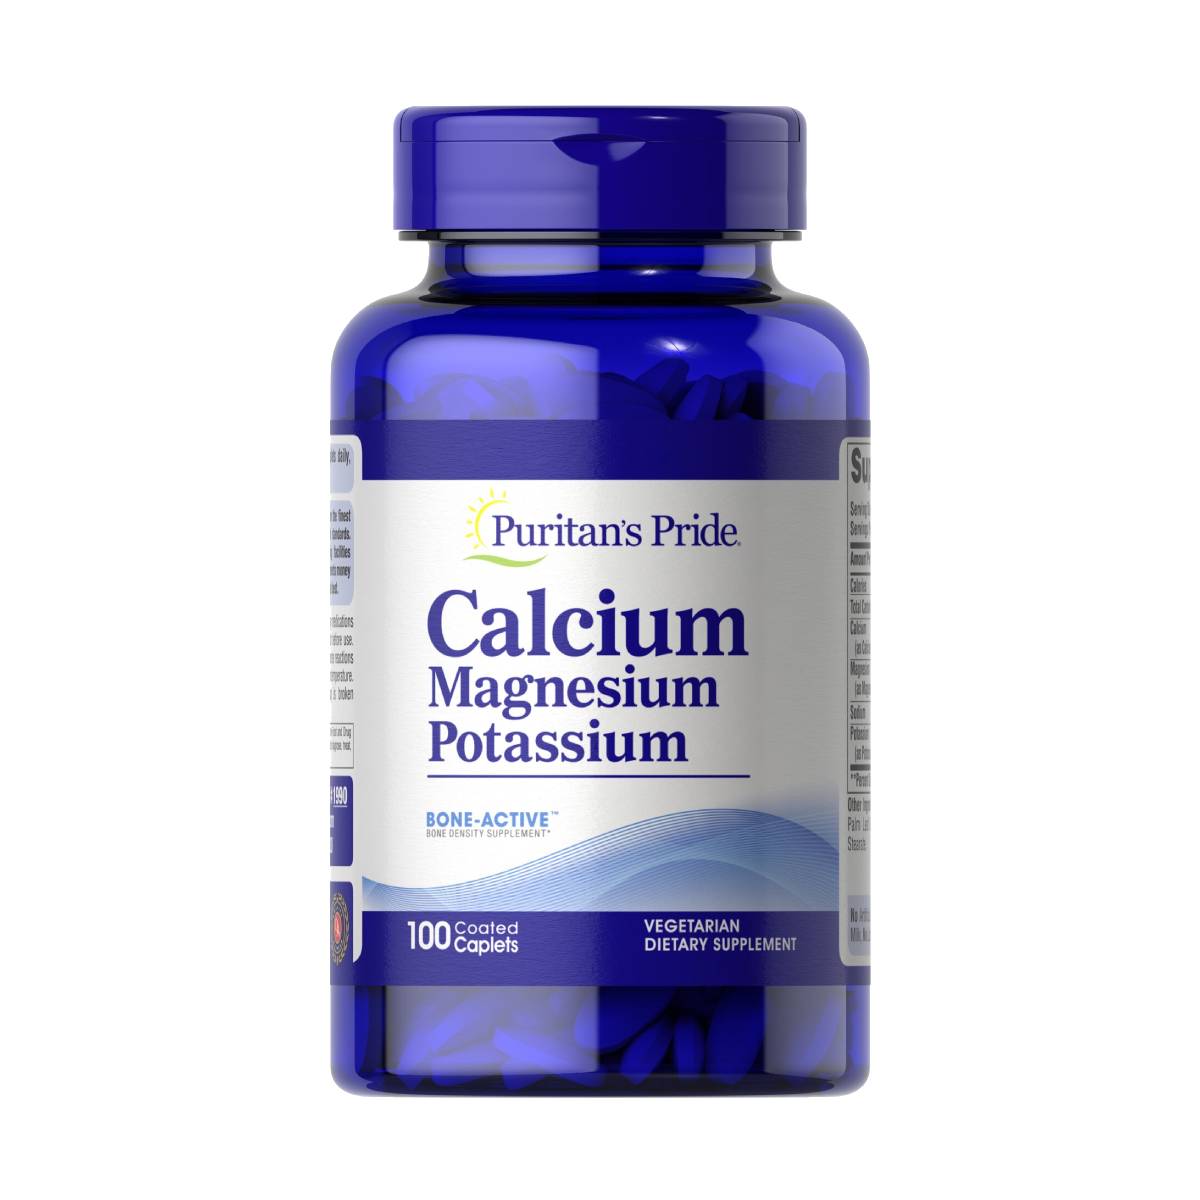 Puritan's Pride, Calcium Magnesium and Potassium